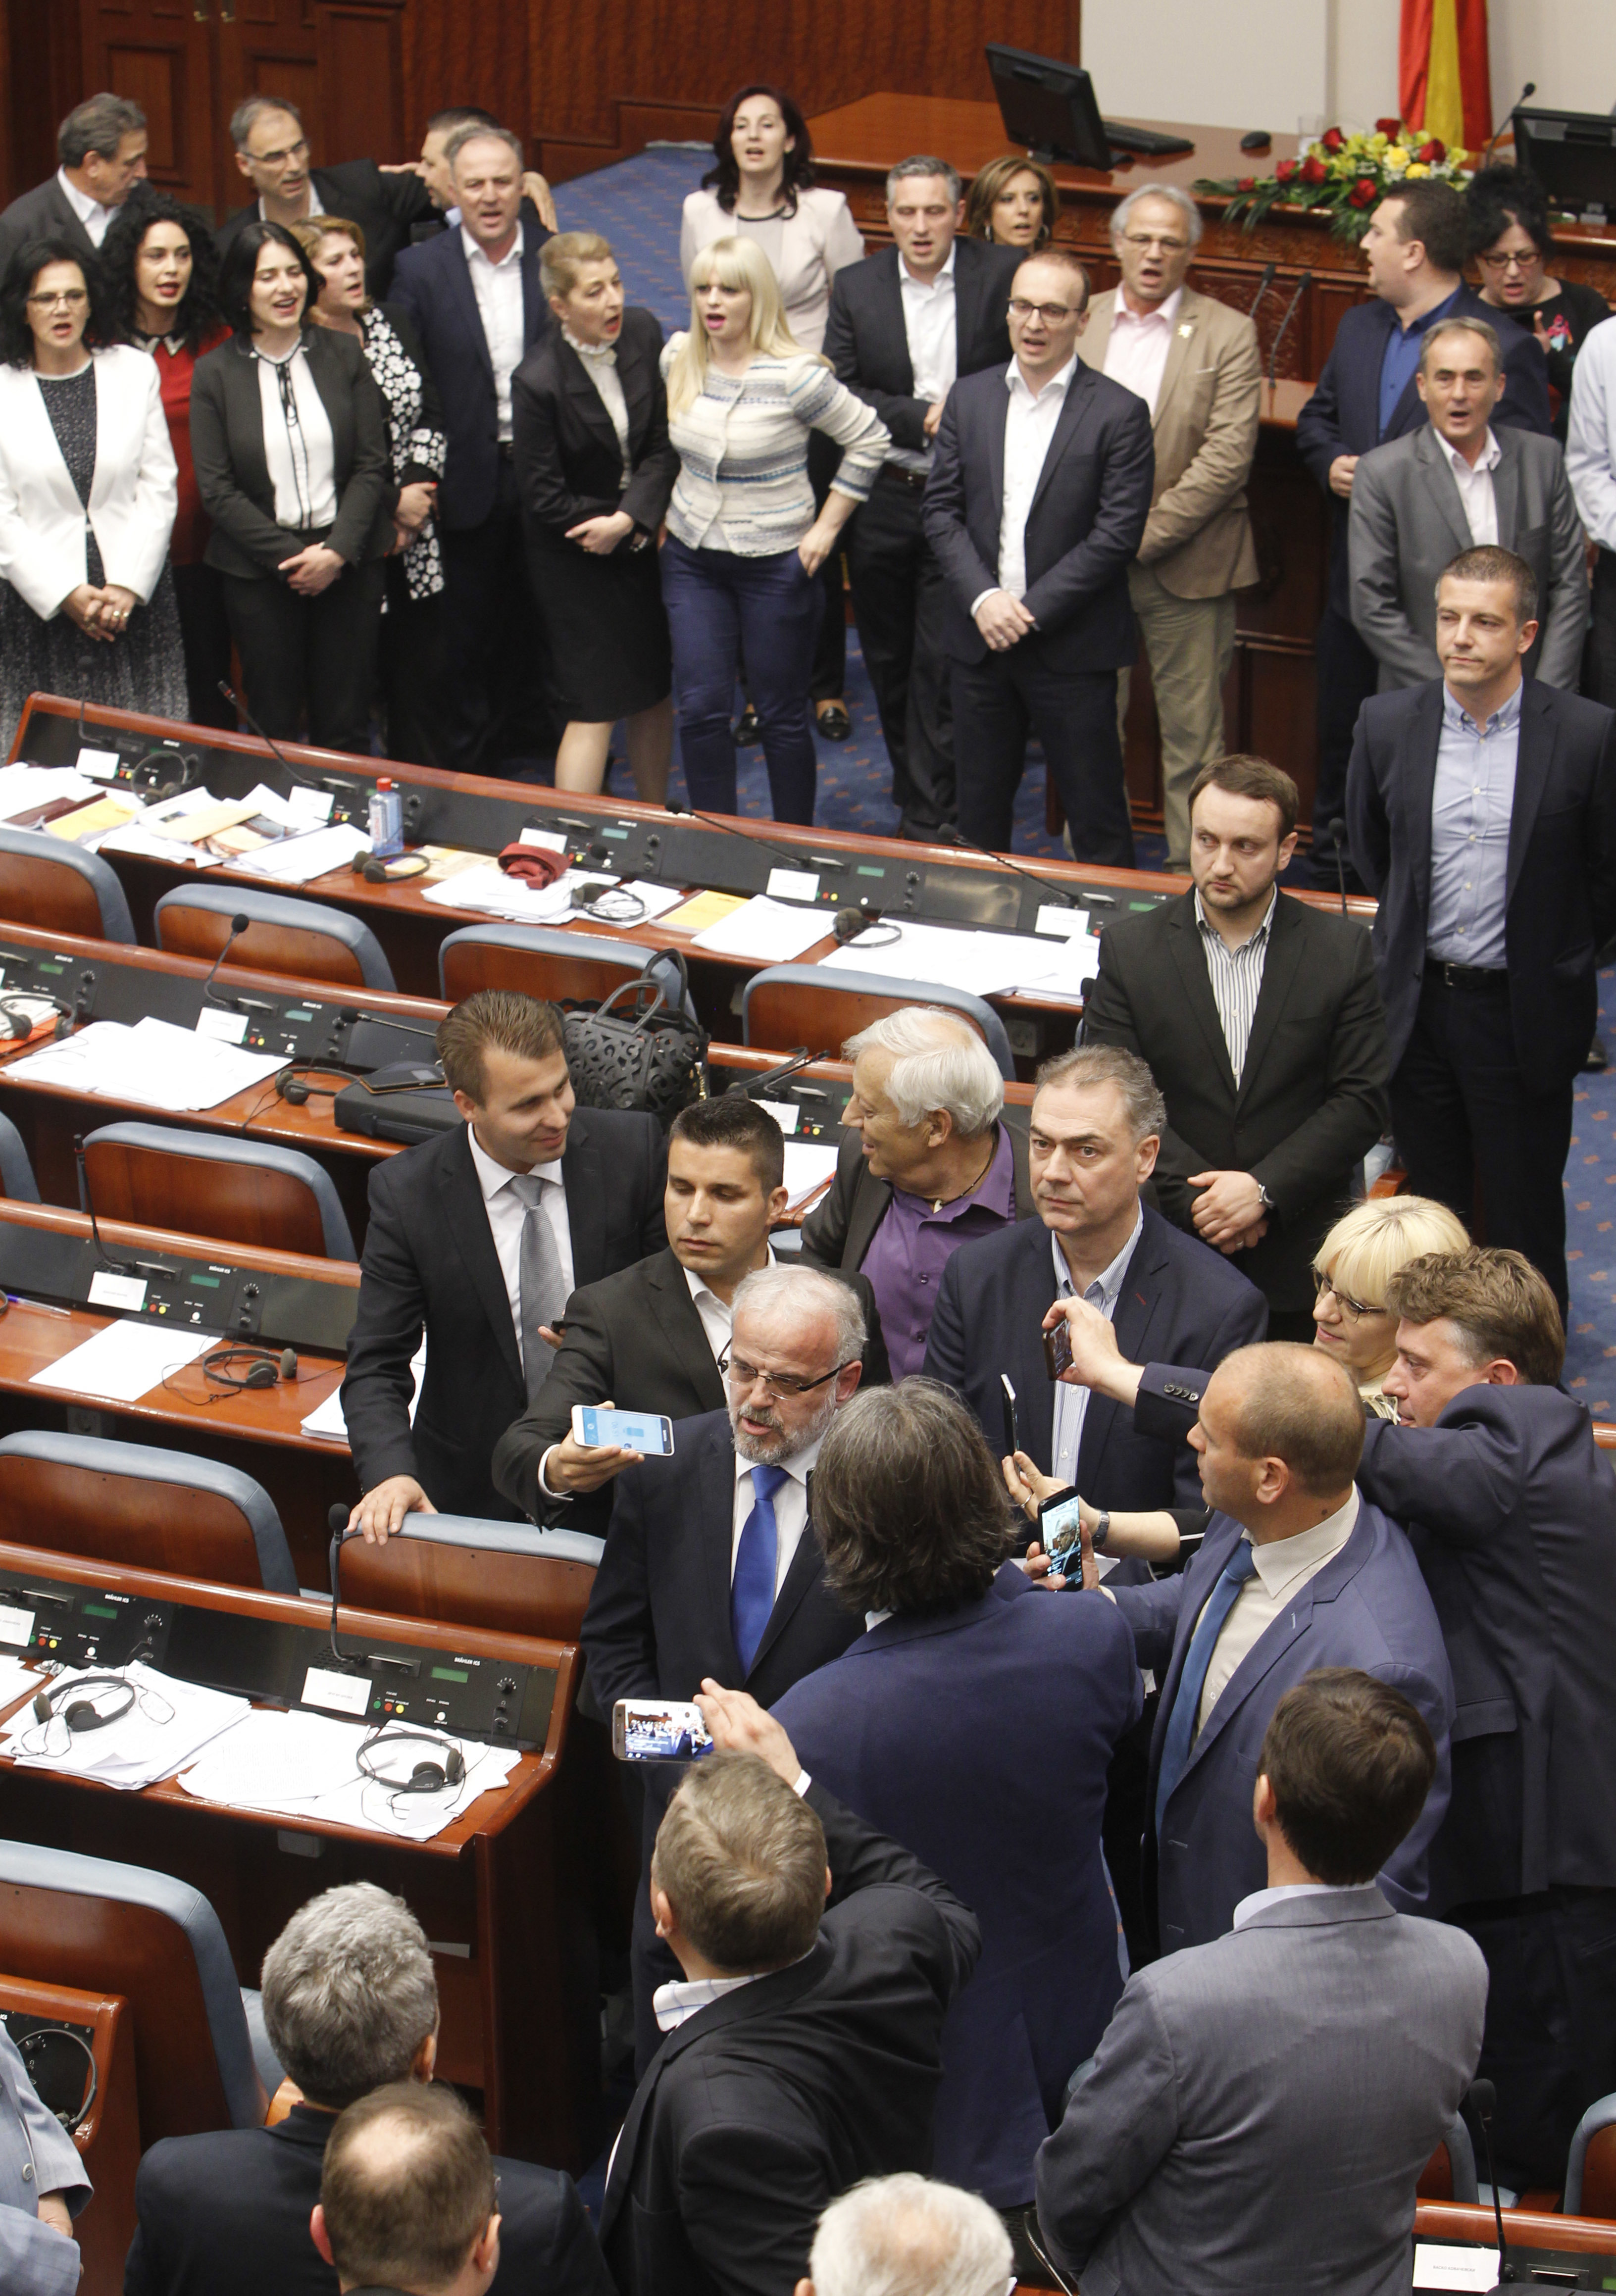 Депутати от ВМРО-ДПМНЕ протестират в парламента. Избран е нов председател - етнически албанец Талат Джафери (в средата)